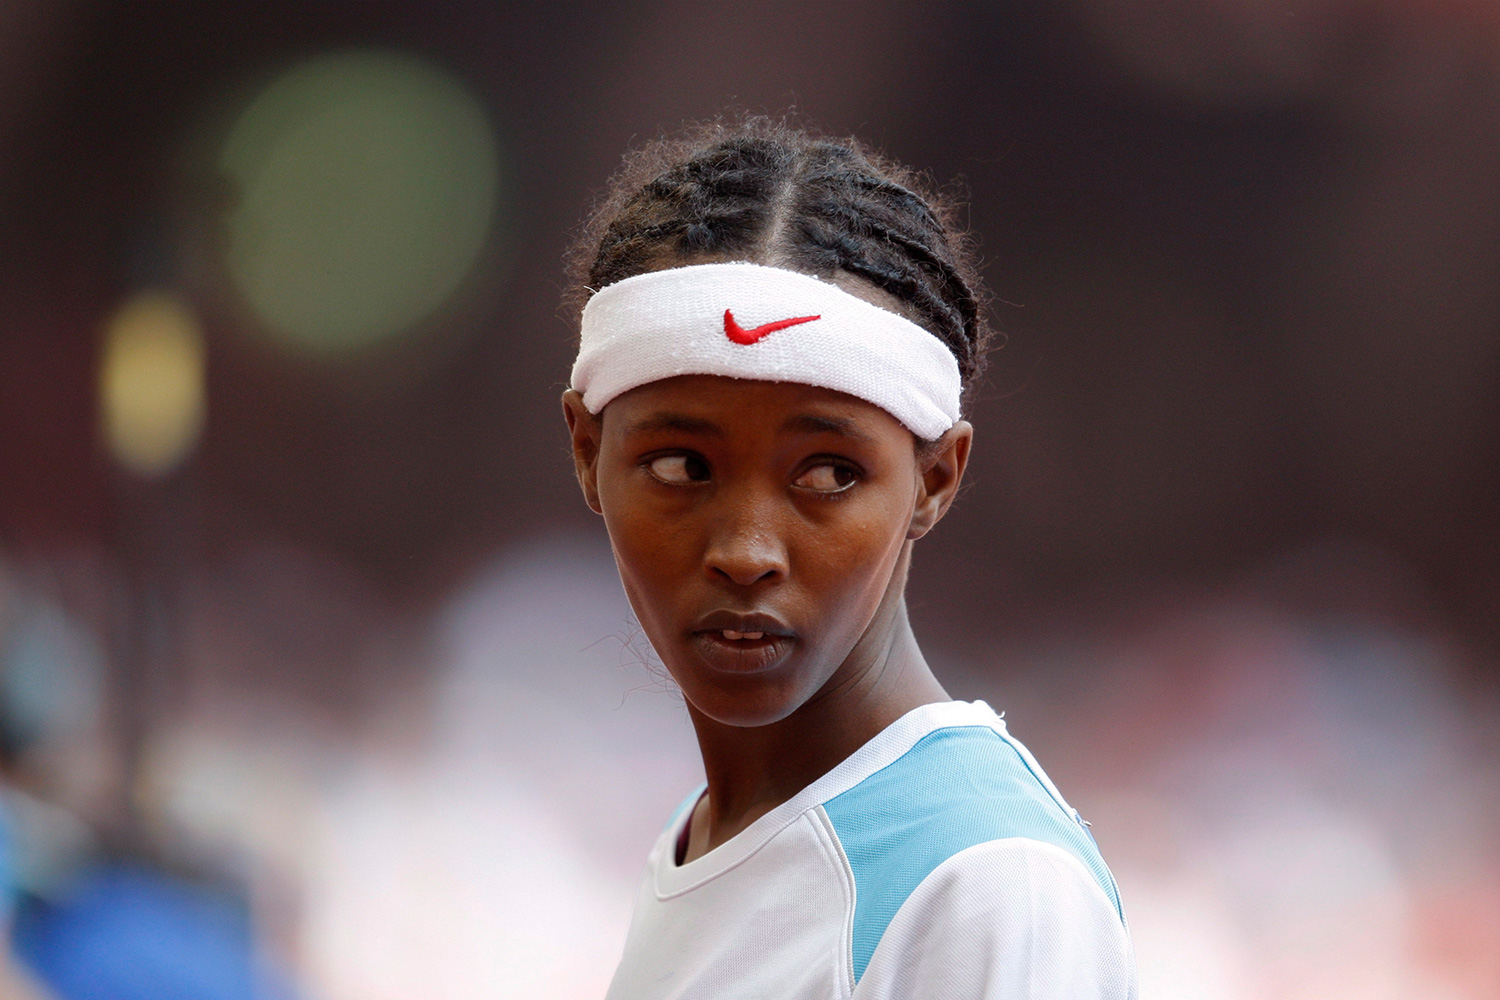 La triste historia de Samia Yusuf Omar, la atleta que conmovió al mundo en Pekín 2008